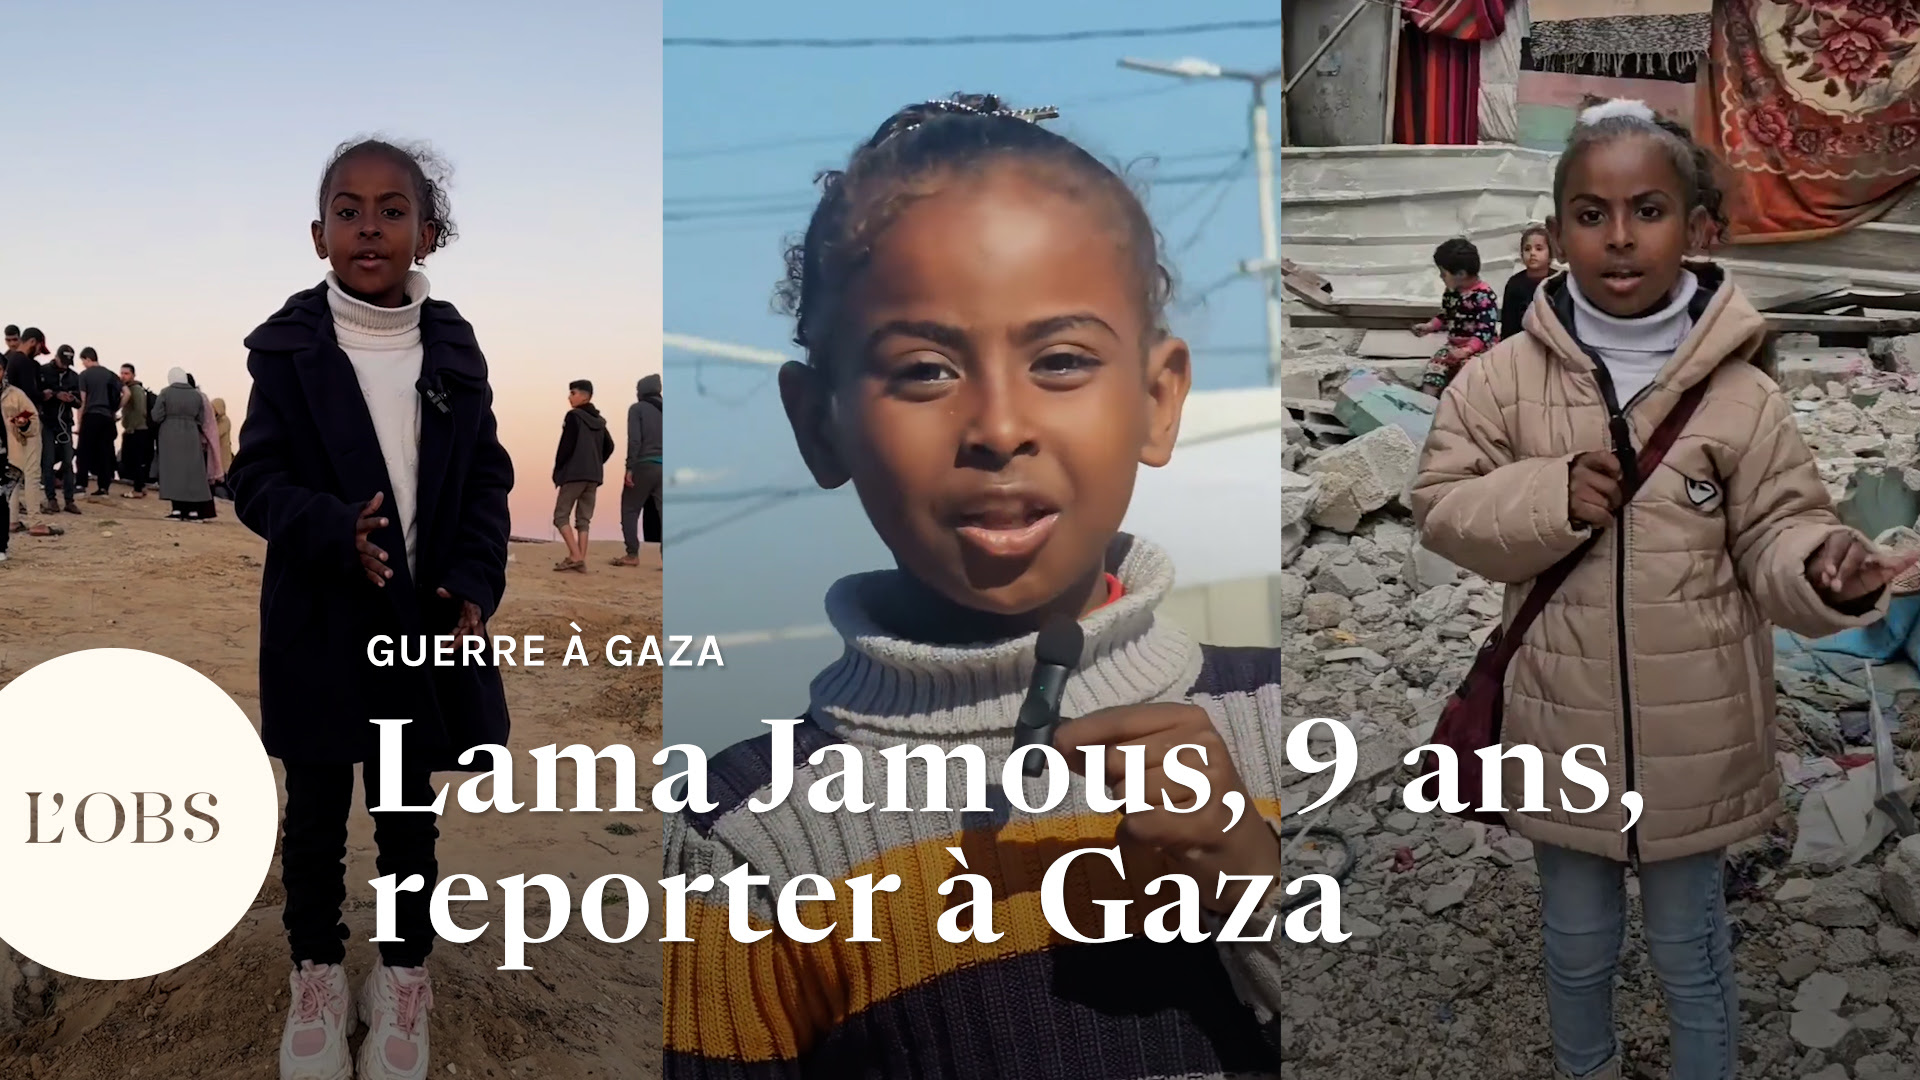 Portrait de "la plus jeune journaliste" de Gaza, la Palestinienne Lama Jamous